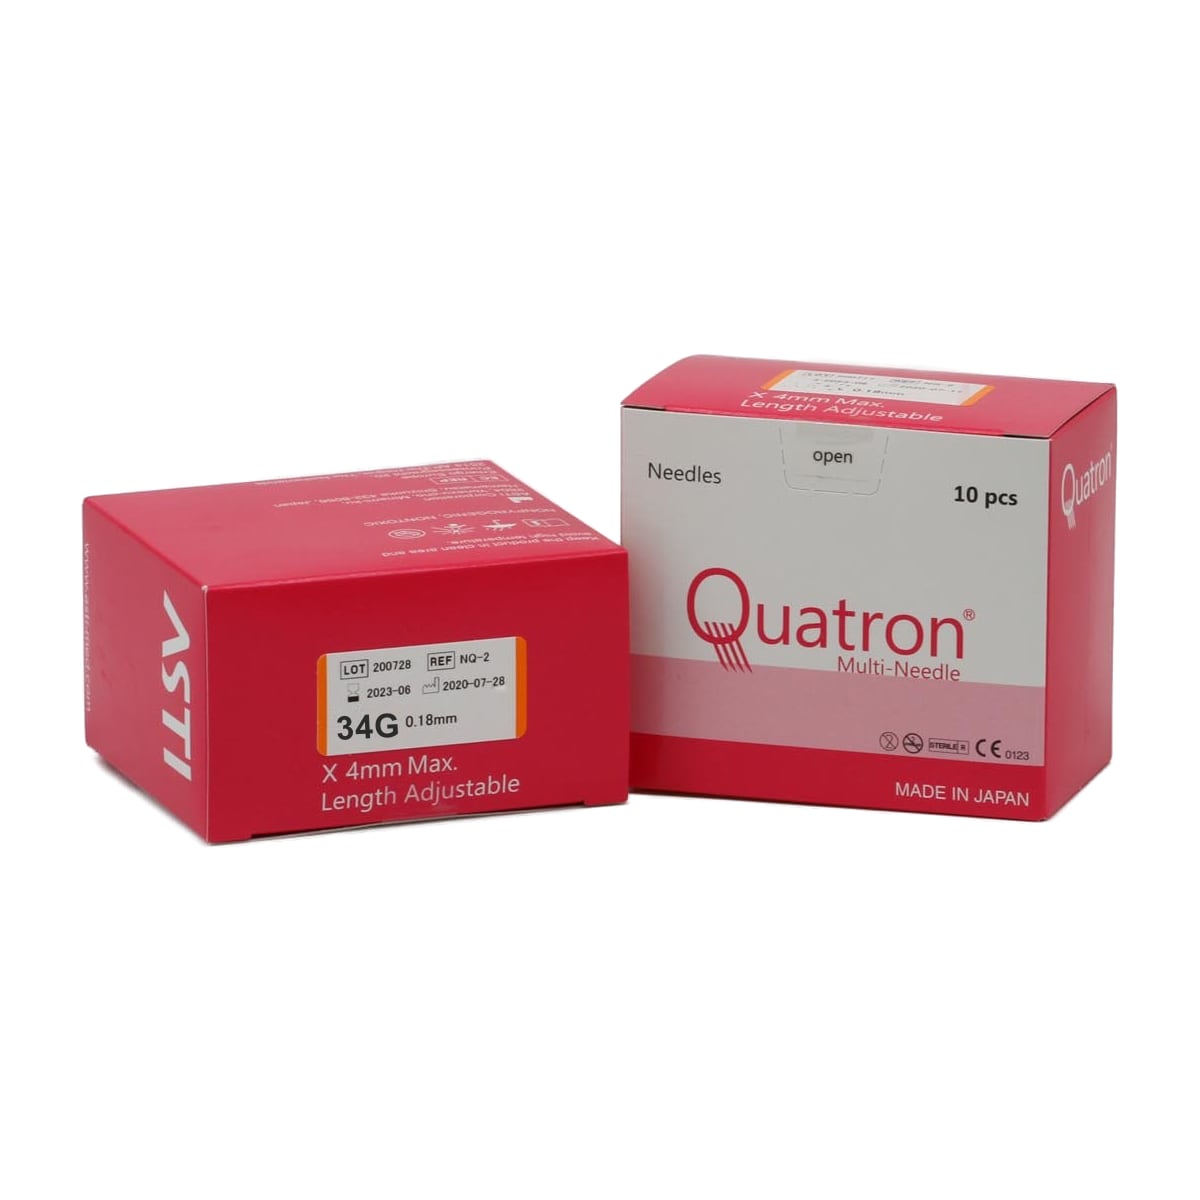 Quatron Multi-Needle 34G